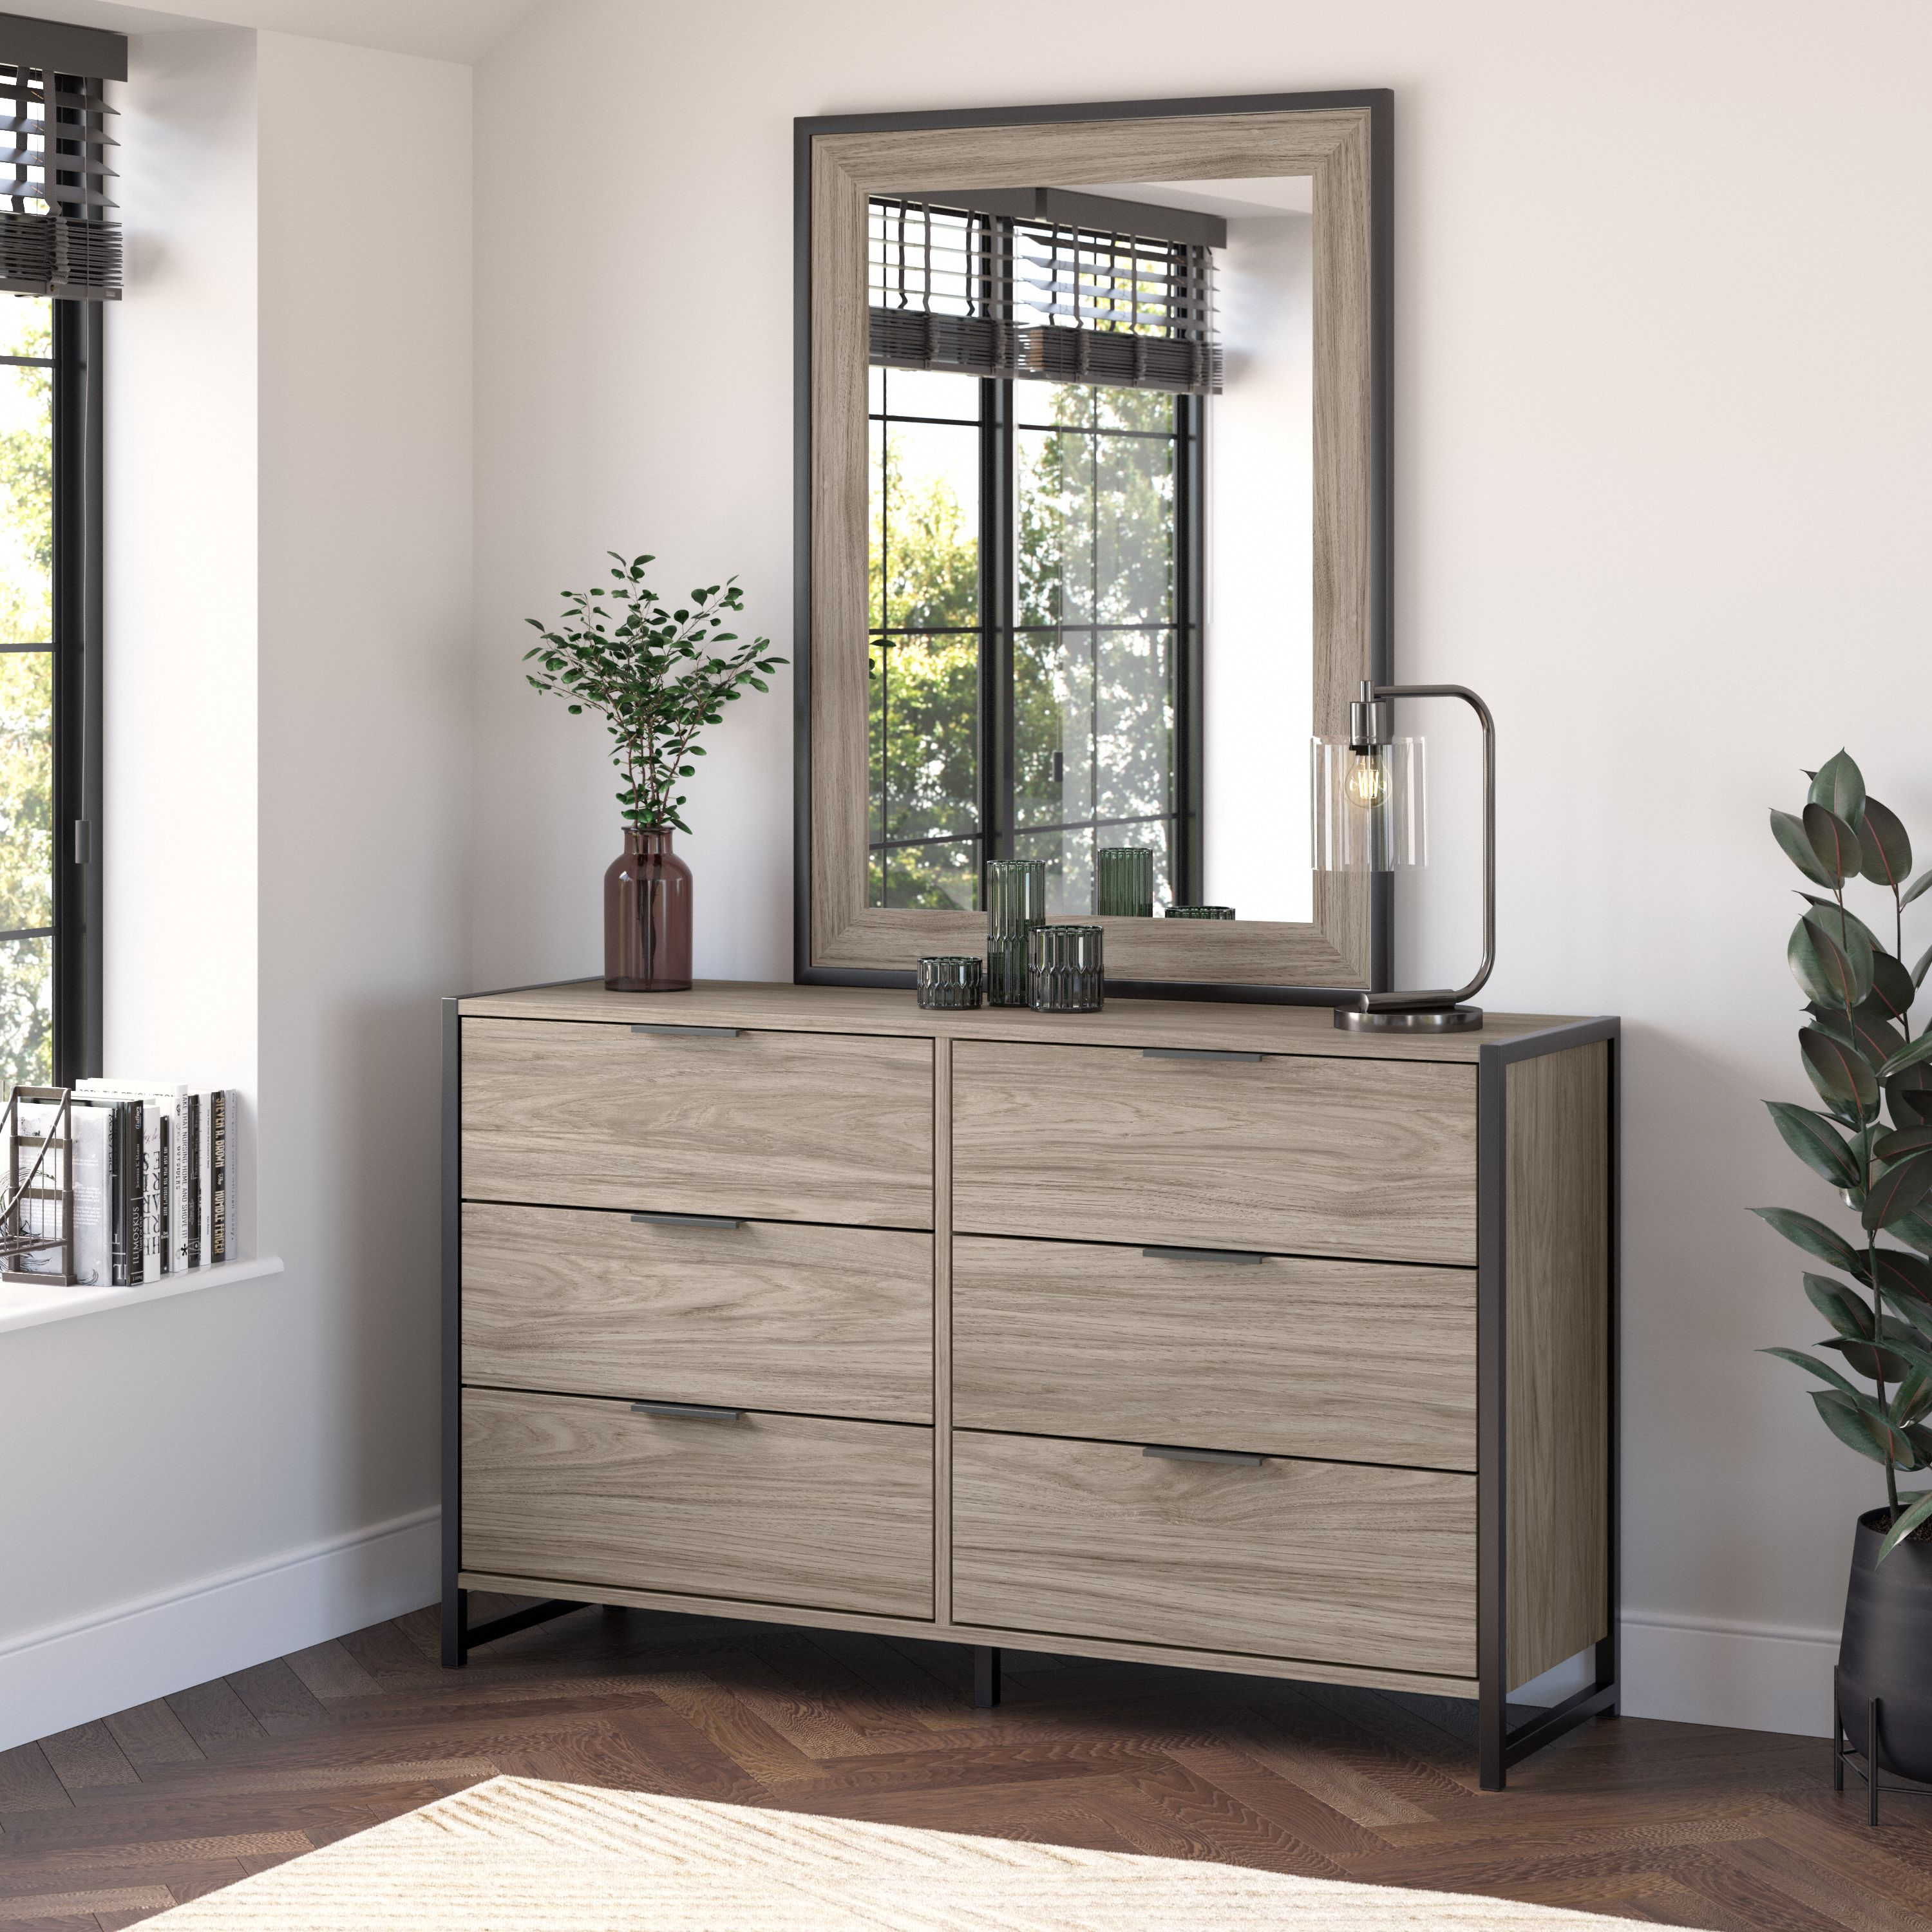 Shop Bush Furniture Atria 6 Drawer Dresser with Mirror 01 ATR015MH #color_modern hickory